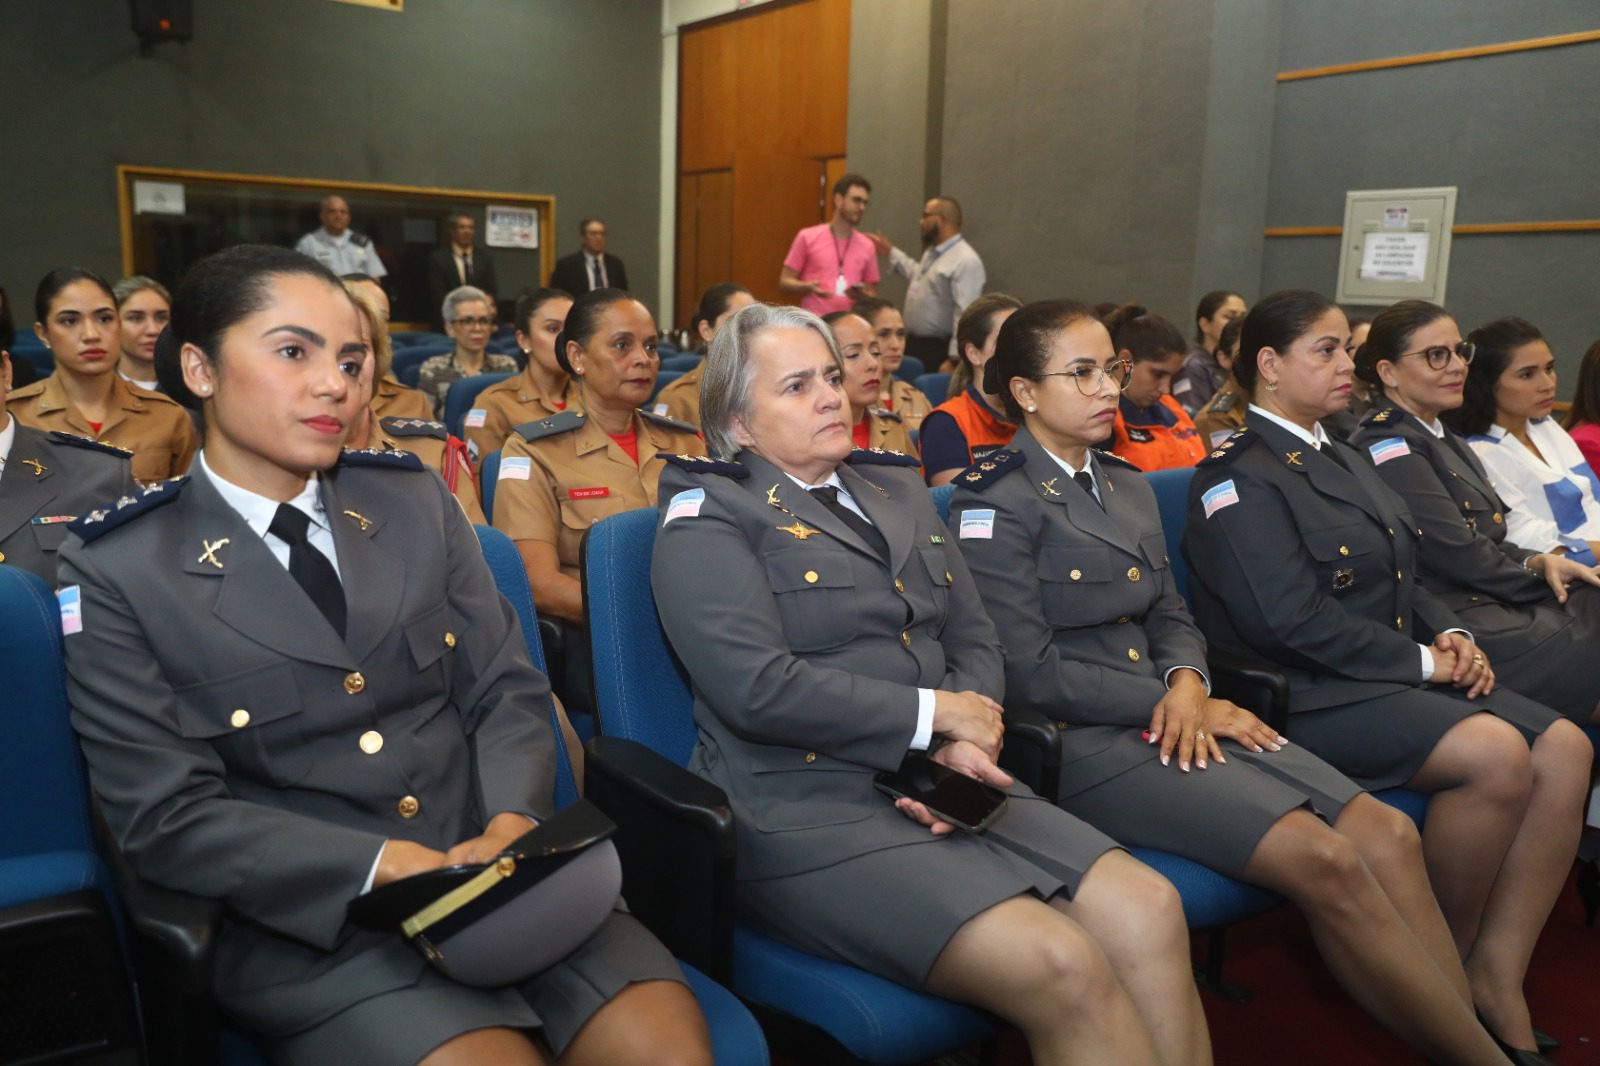 Presidente da Assembleia celebra mulheres da segurança pública no Dia Estadual da Mulher Policial Militar, Bombeiro Militar e Policial Civil